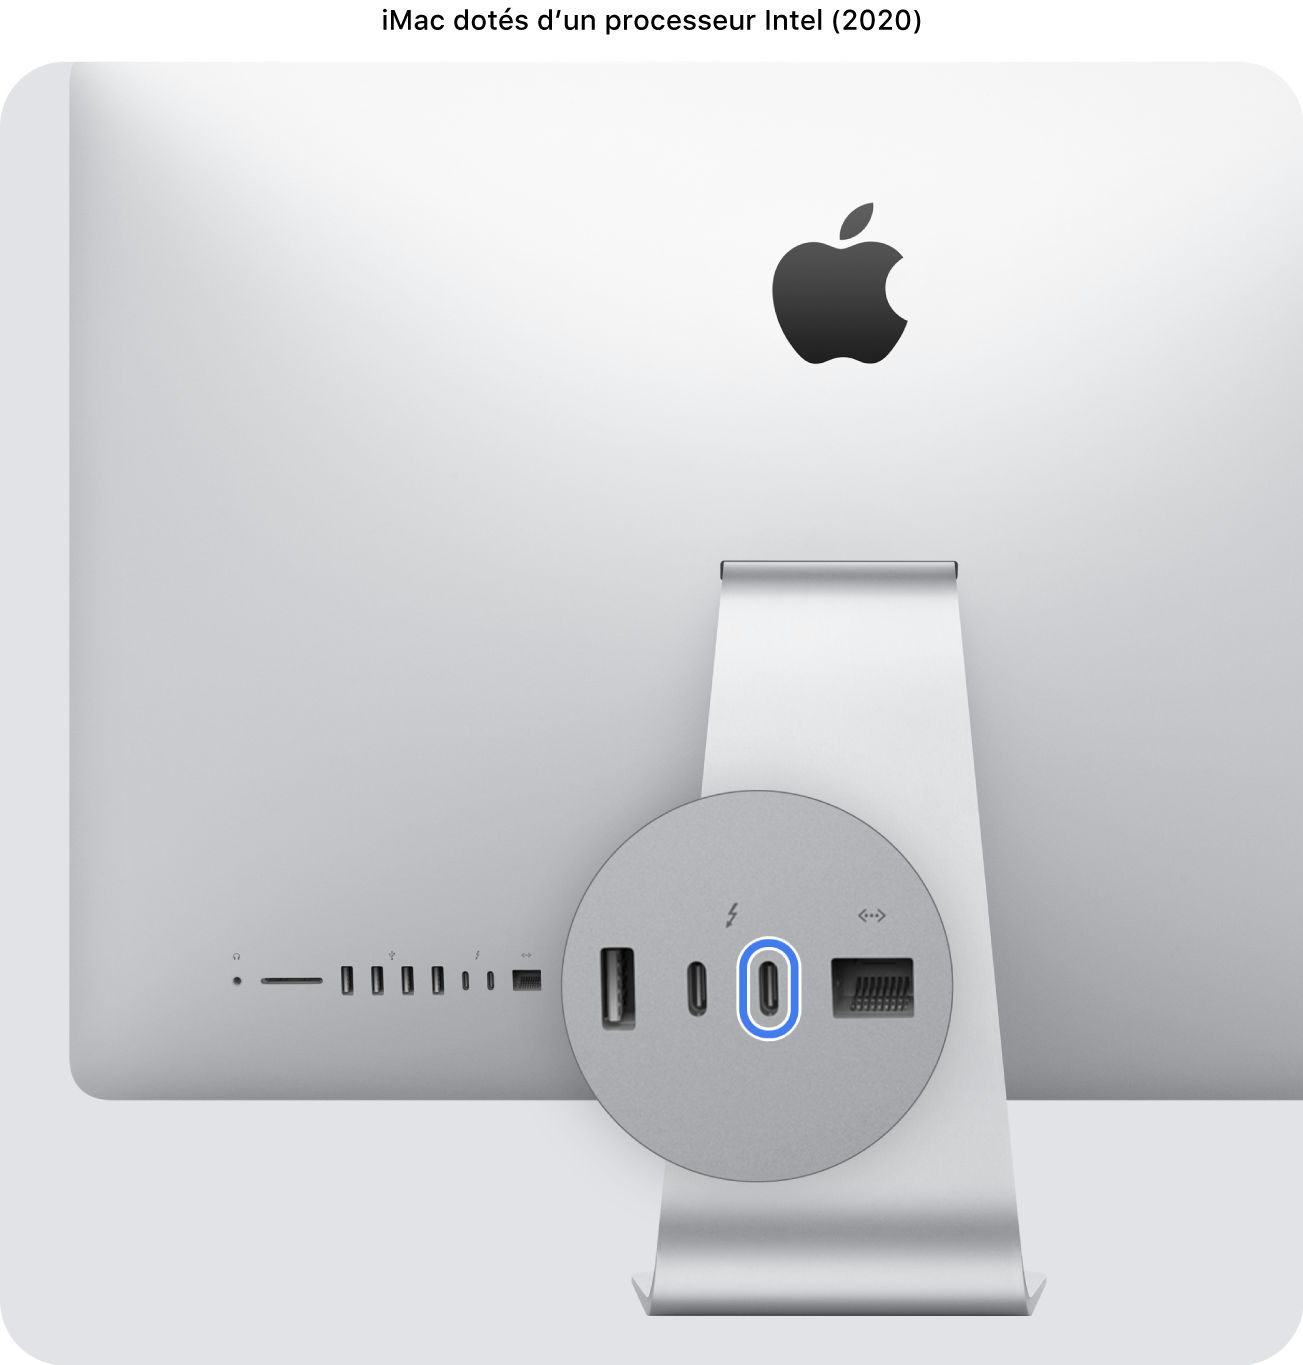 L’arrière de l’iMac (2020) à processeur Intel, présentant deux ports Thunderbolt 3 (USB-C), avec celui situé le plus à droite mis en évidence.